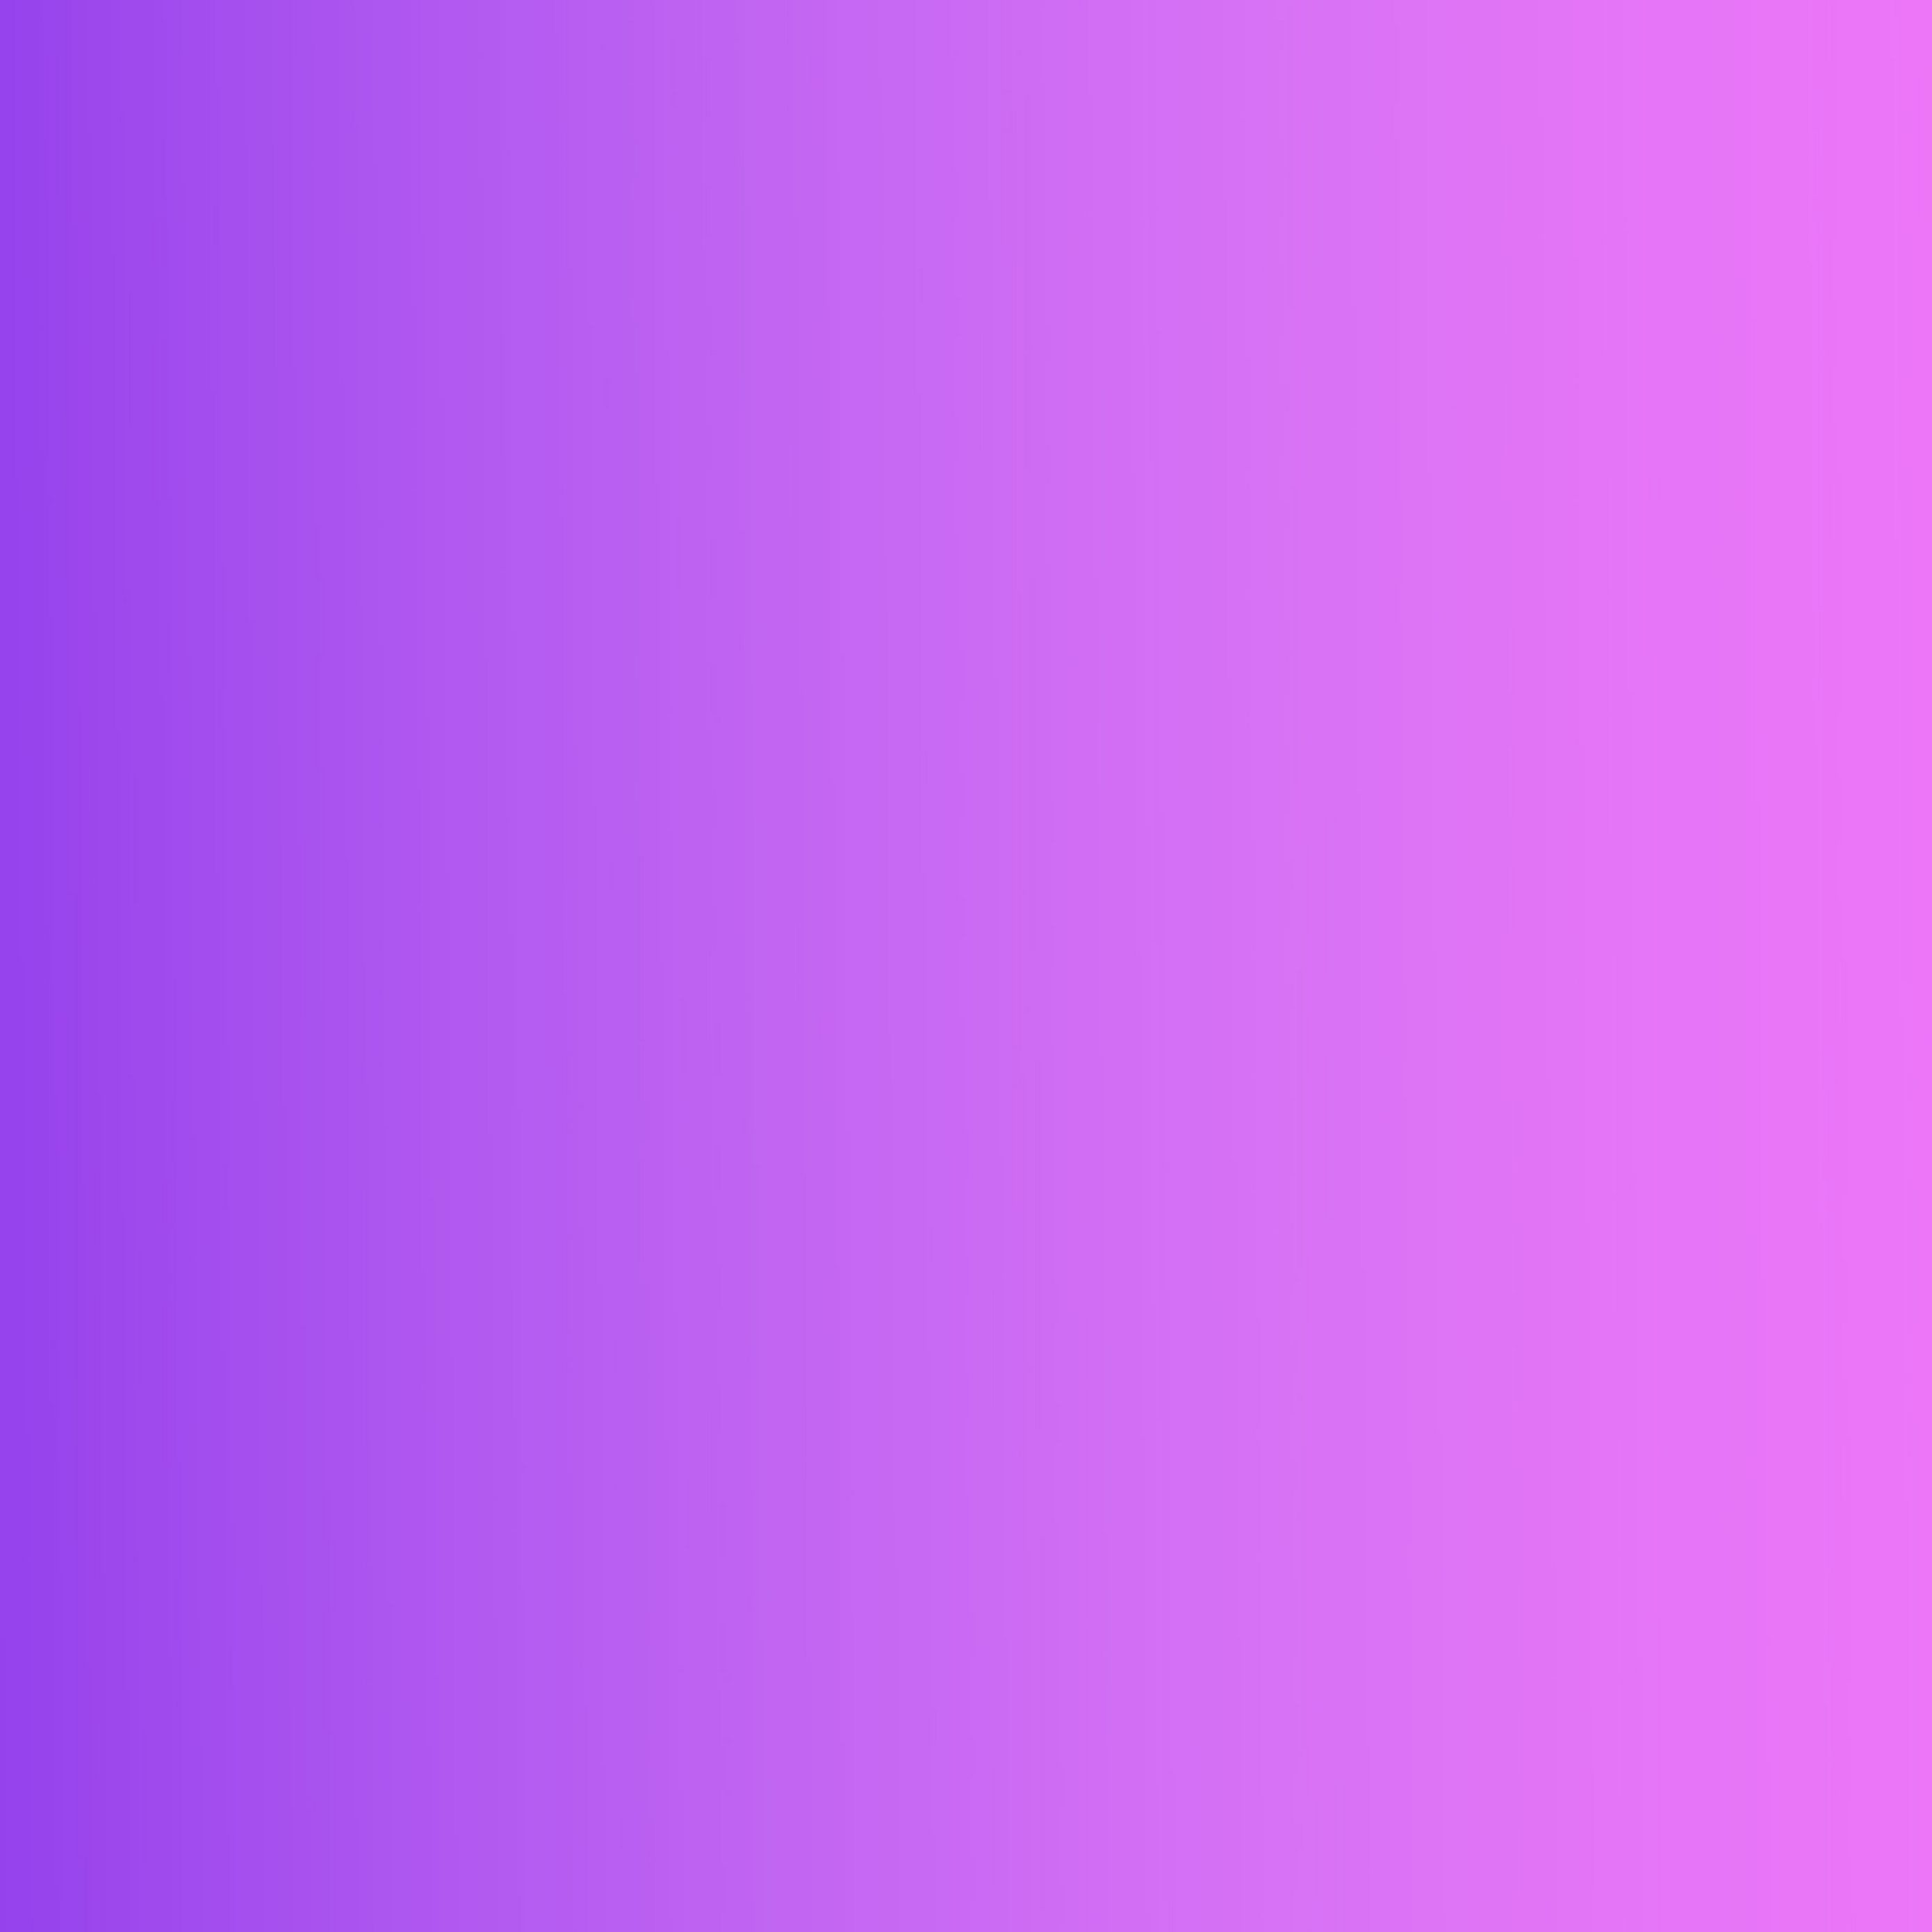 Download wallpaper 2780x2780 gradient, pink, purple, background ipad air, ipad air ipad ipad ipad mini ipad mini ipad mini ipad pro 9.7 for parallax HD background